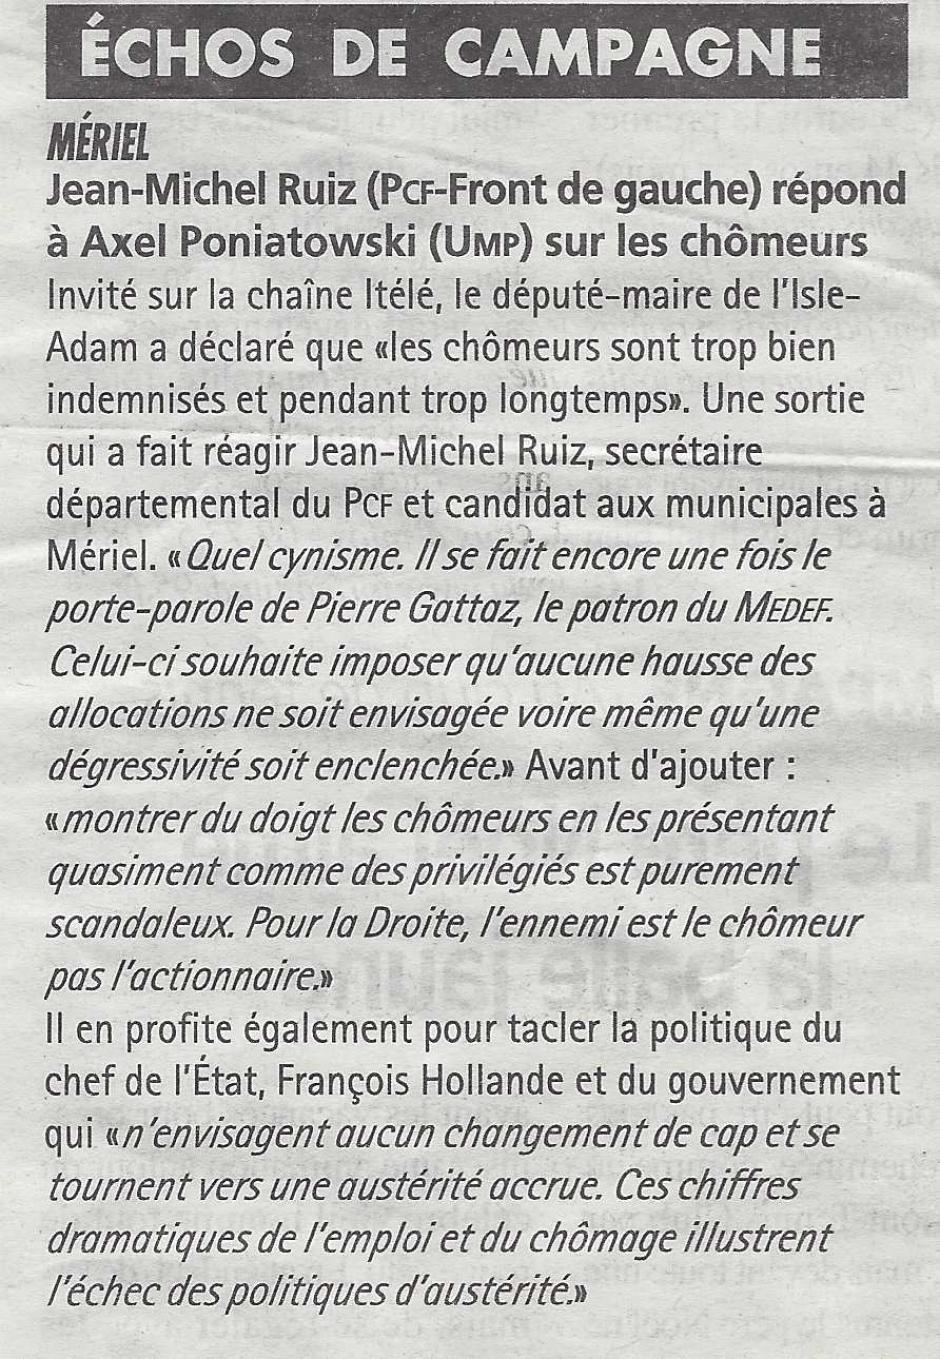 Mériel, Jean-Michel Ruiz (PCF-FdG) répond à Axel Poniatowski sur les chômeurs. La Gazette du 08/01/2014